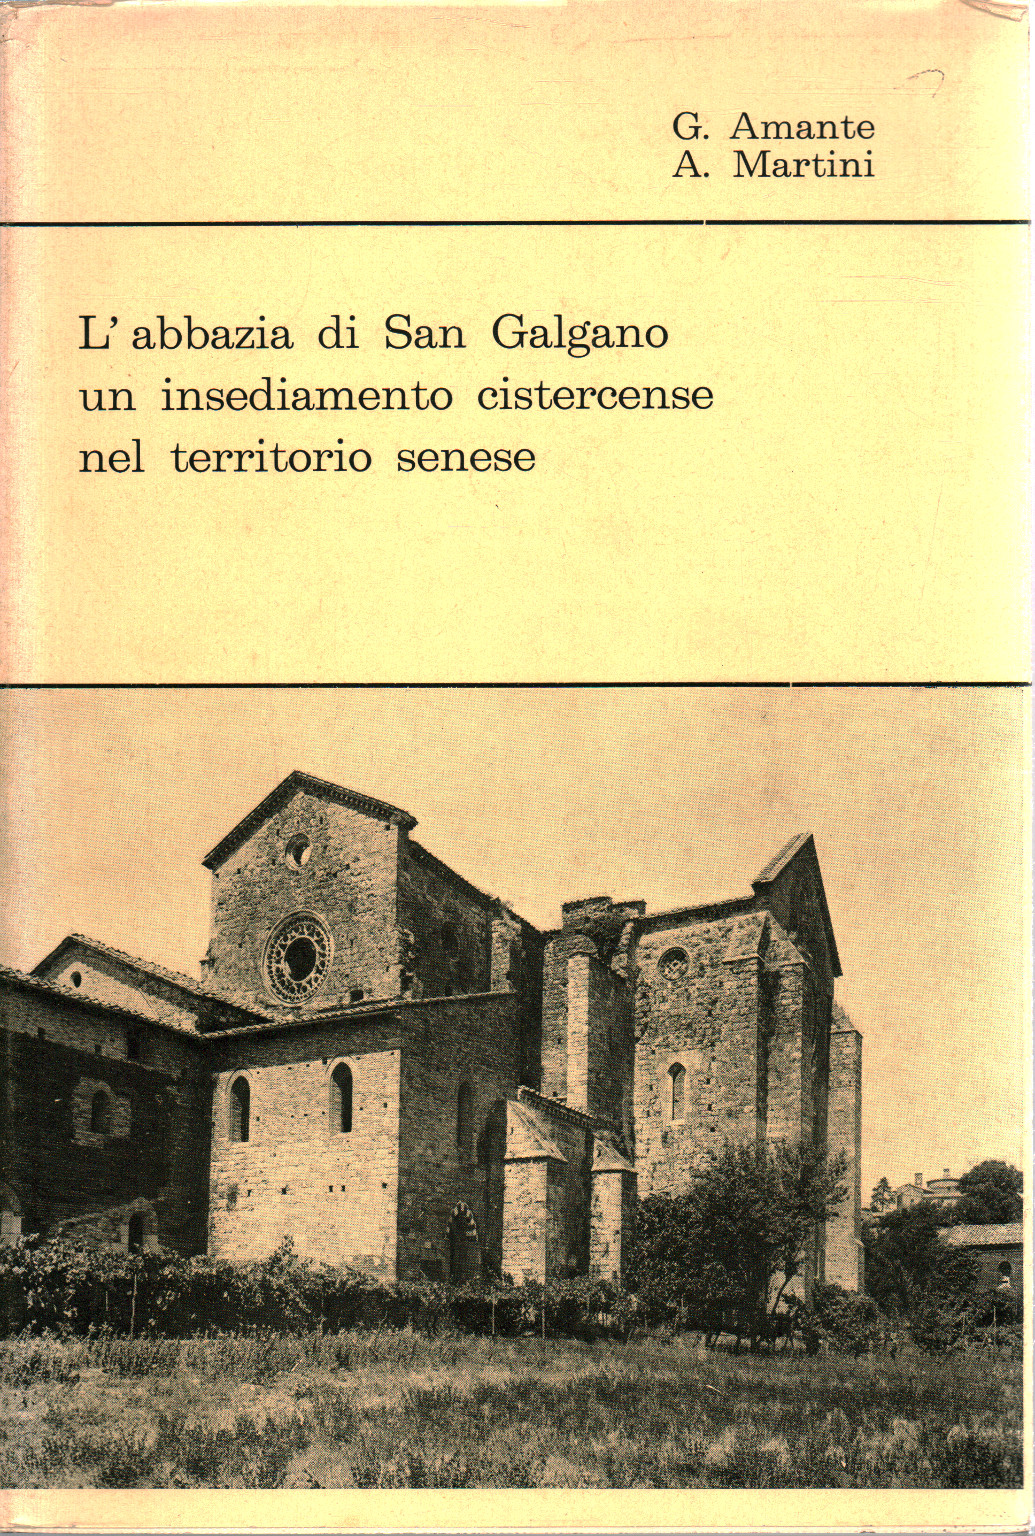 L'abbazia di San Galgano un insediamento cisterce, s.a.